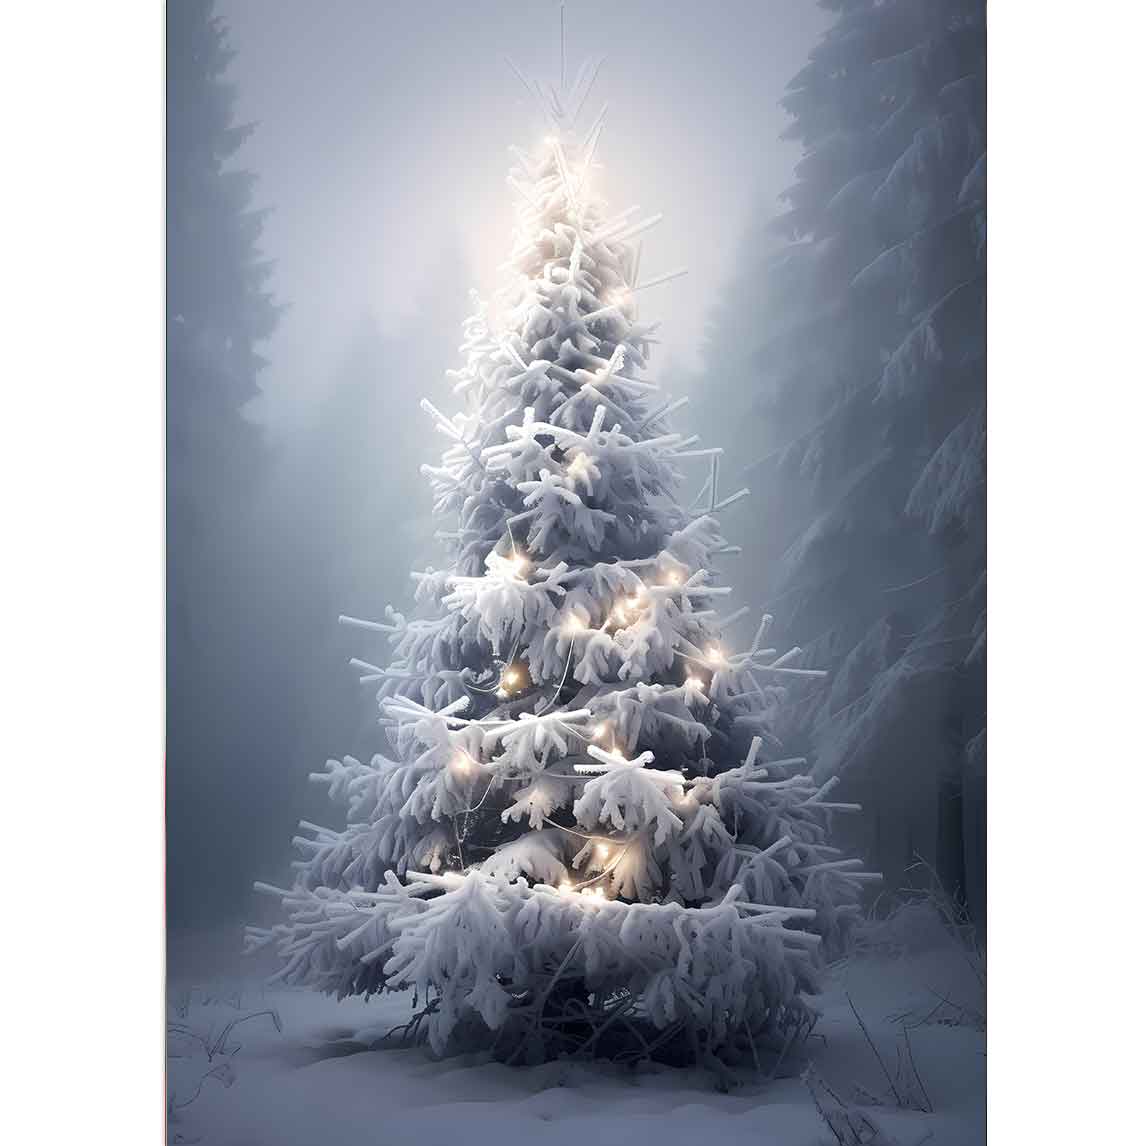 Weihnachtsbaum im Wald geschmückt mit Lichtern, eine Decke von Schnee liegt überall